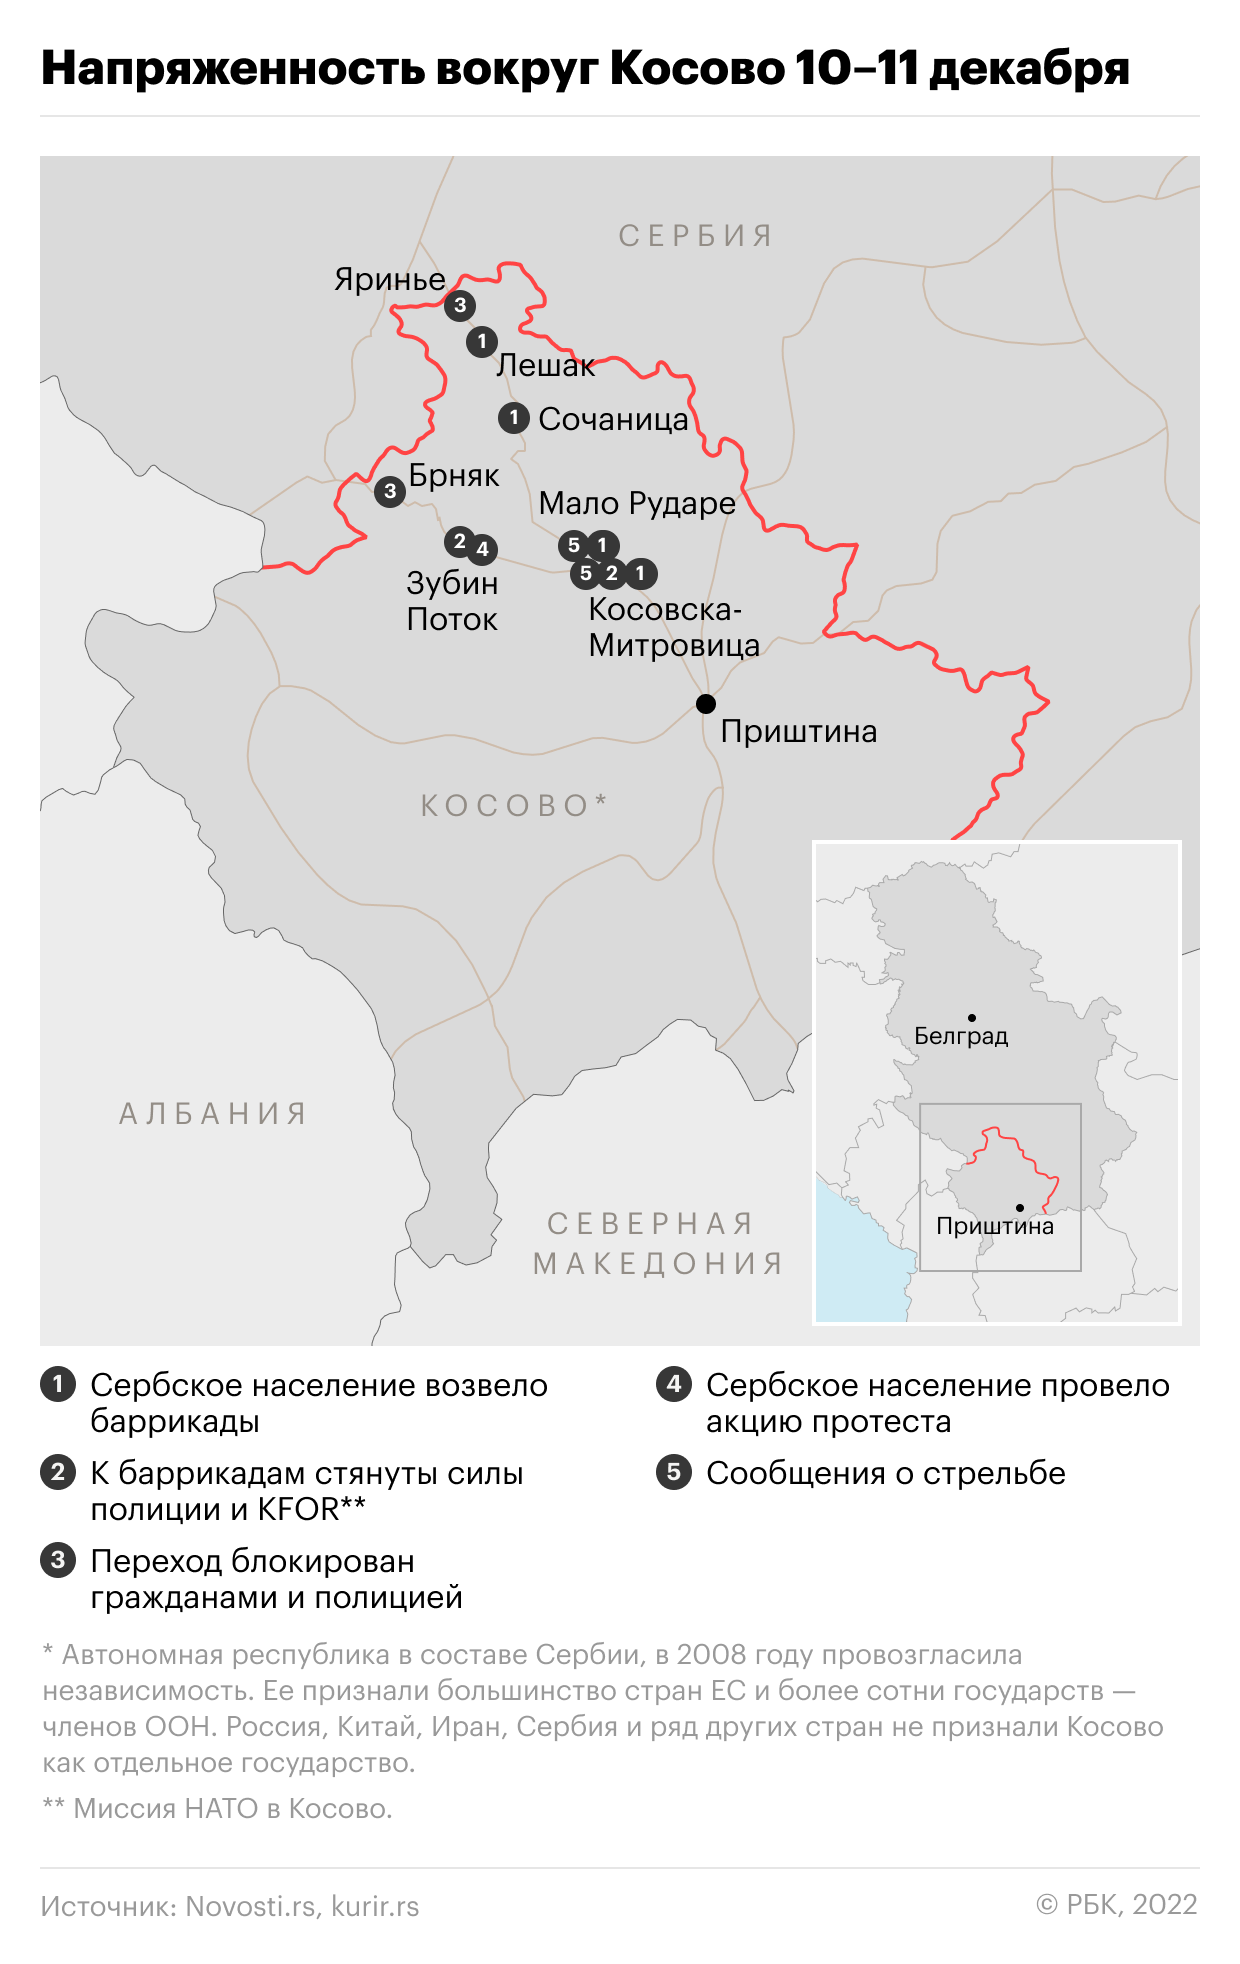 Кремль заявил, что в конфликте в Косово нужно обеспечить интересы сербов